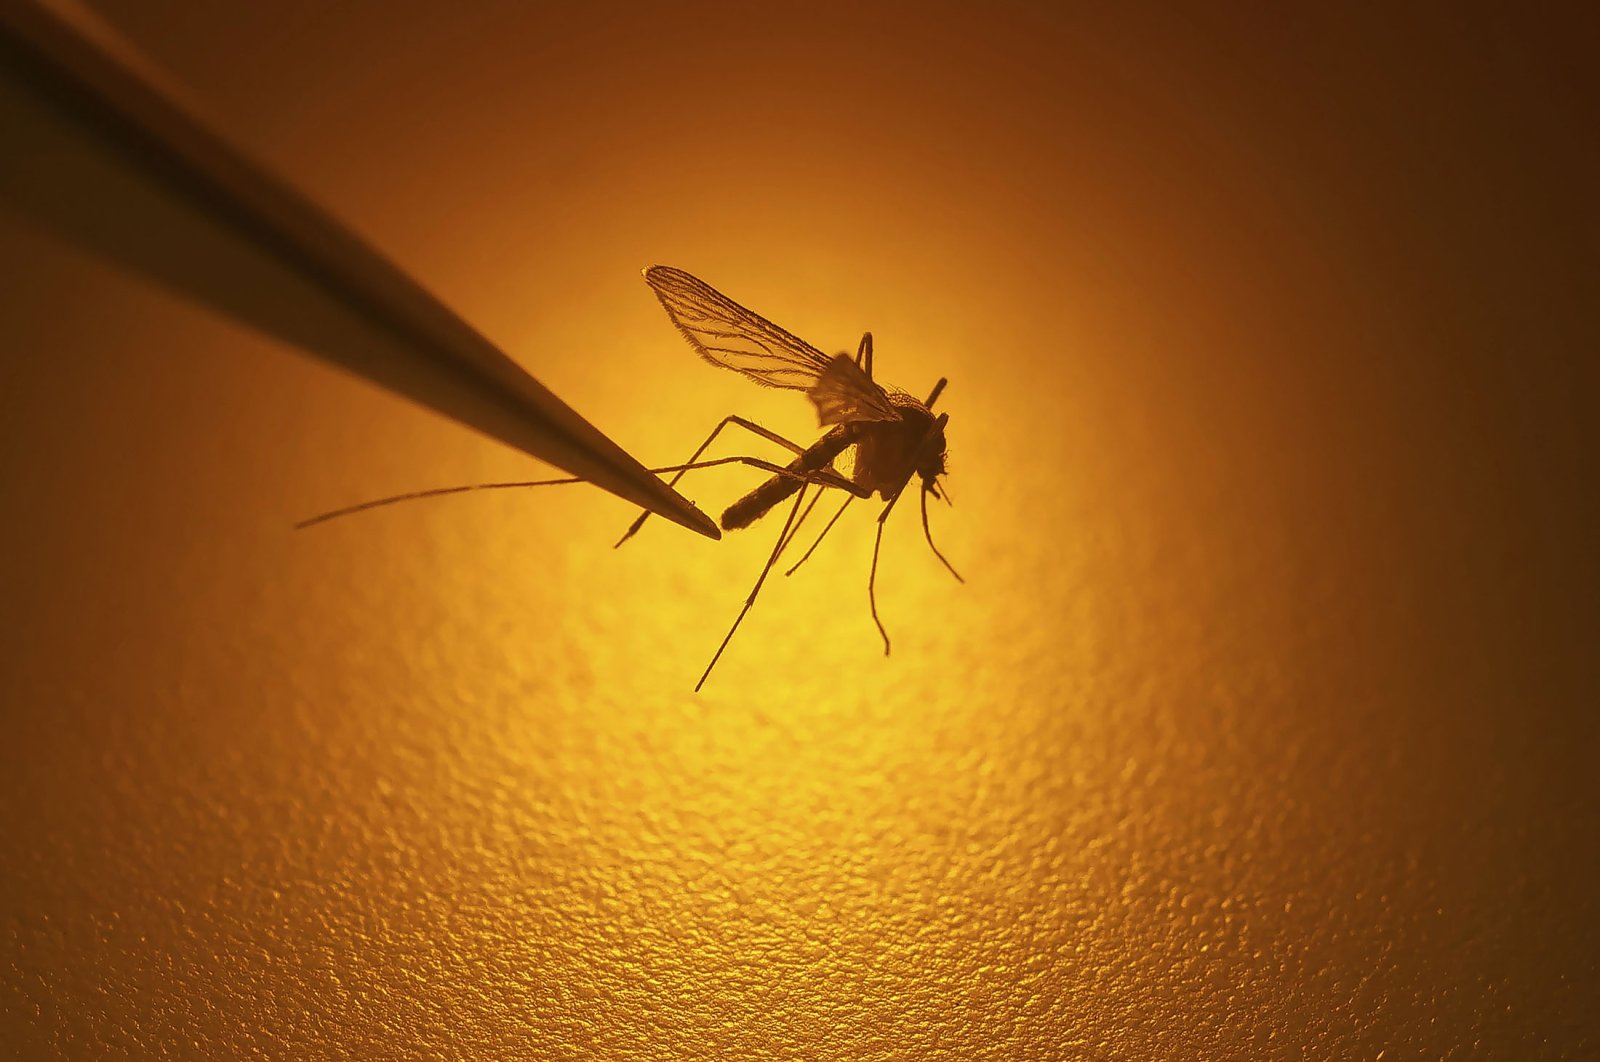 Lebih banyak malaria di cakrawala: Saat suhu naik, nyamuk bermigrasi